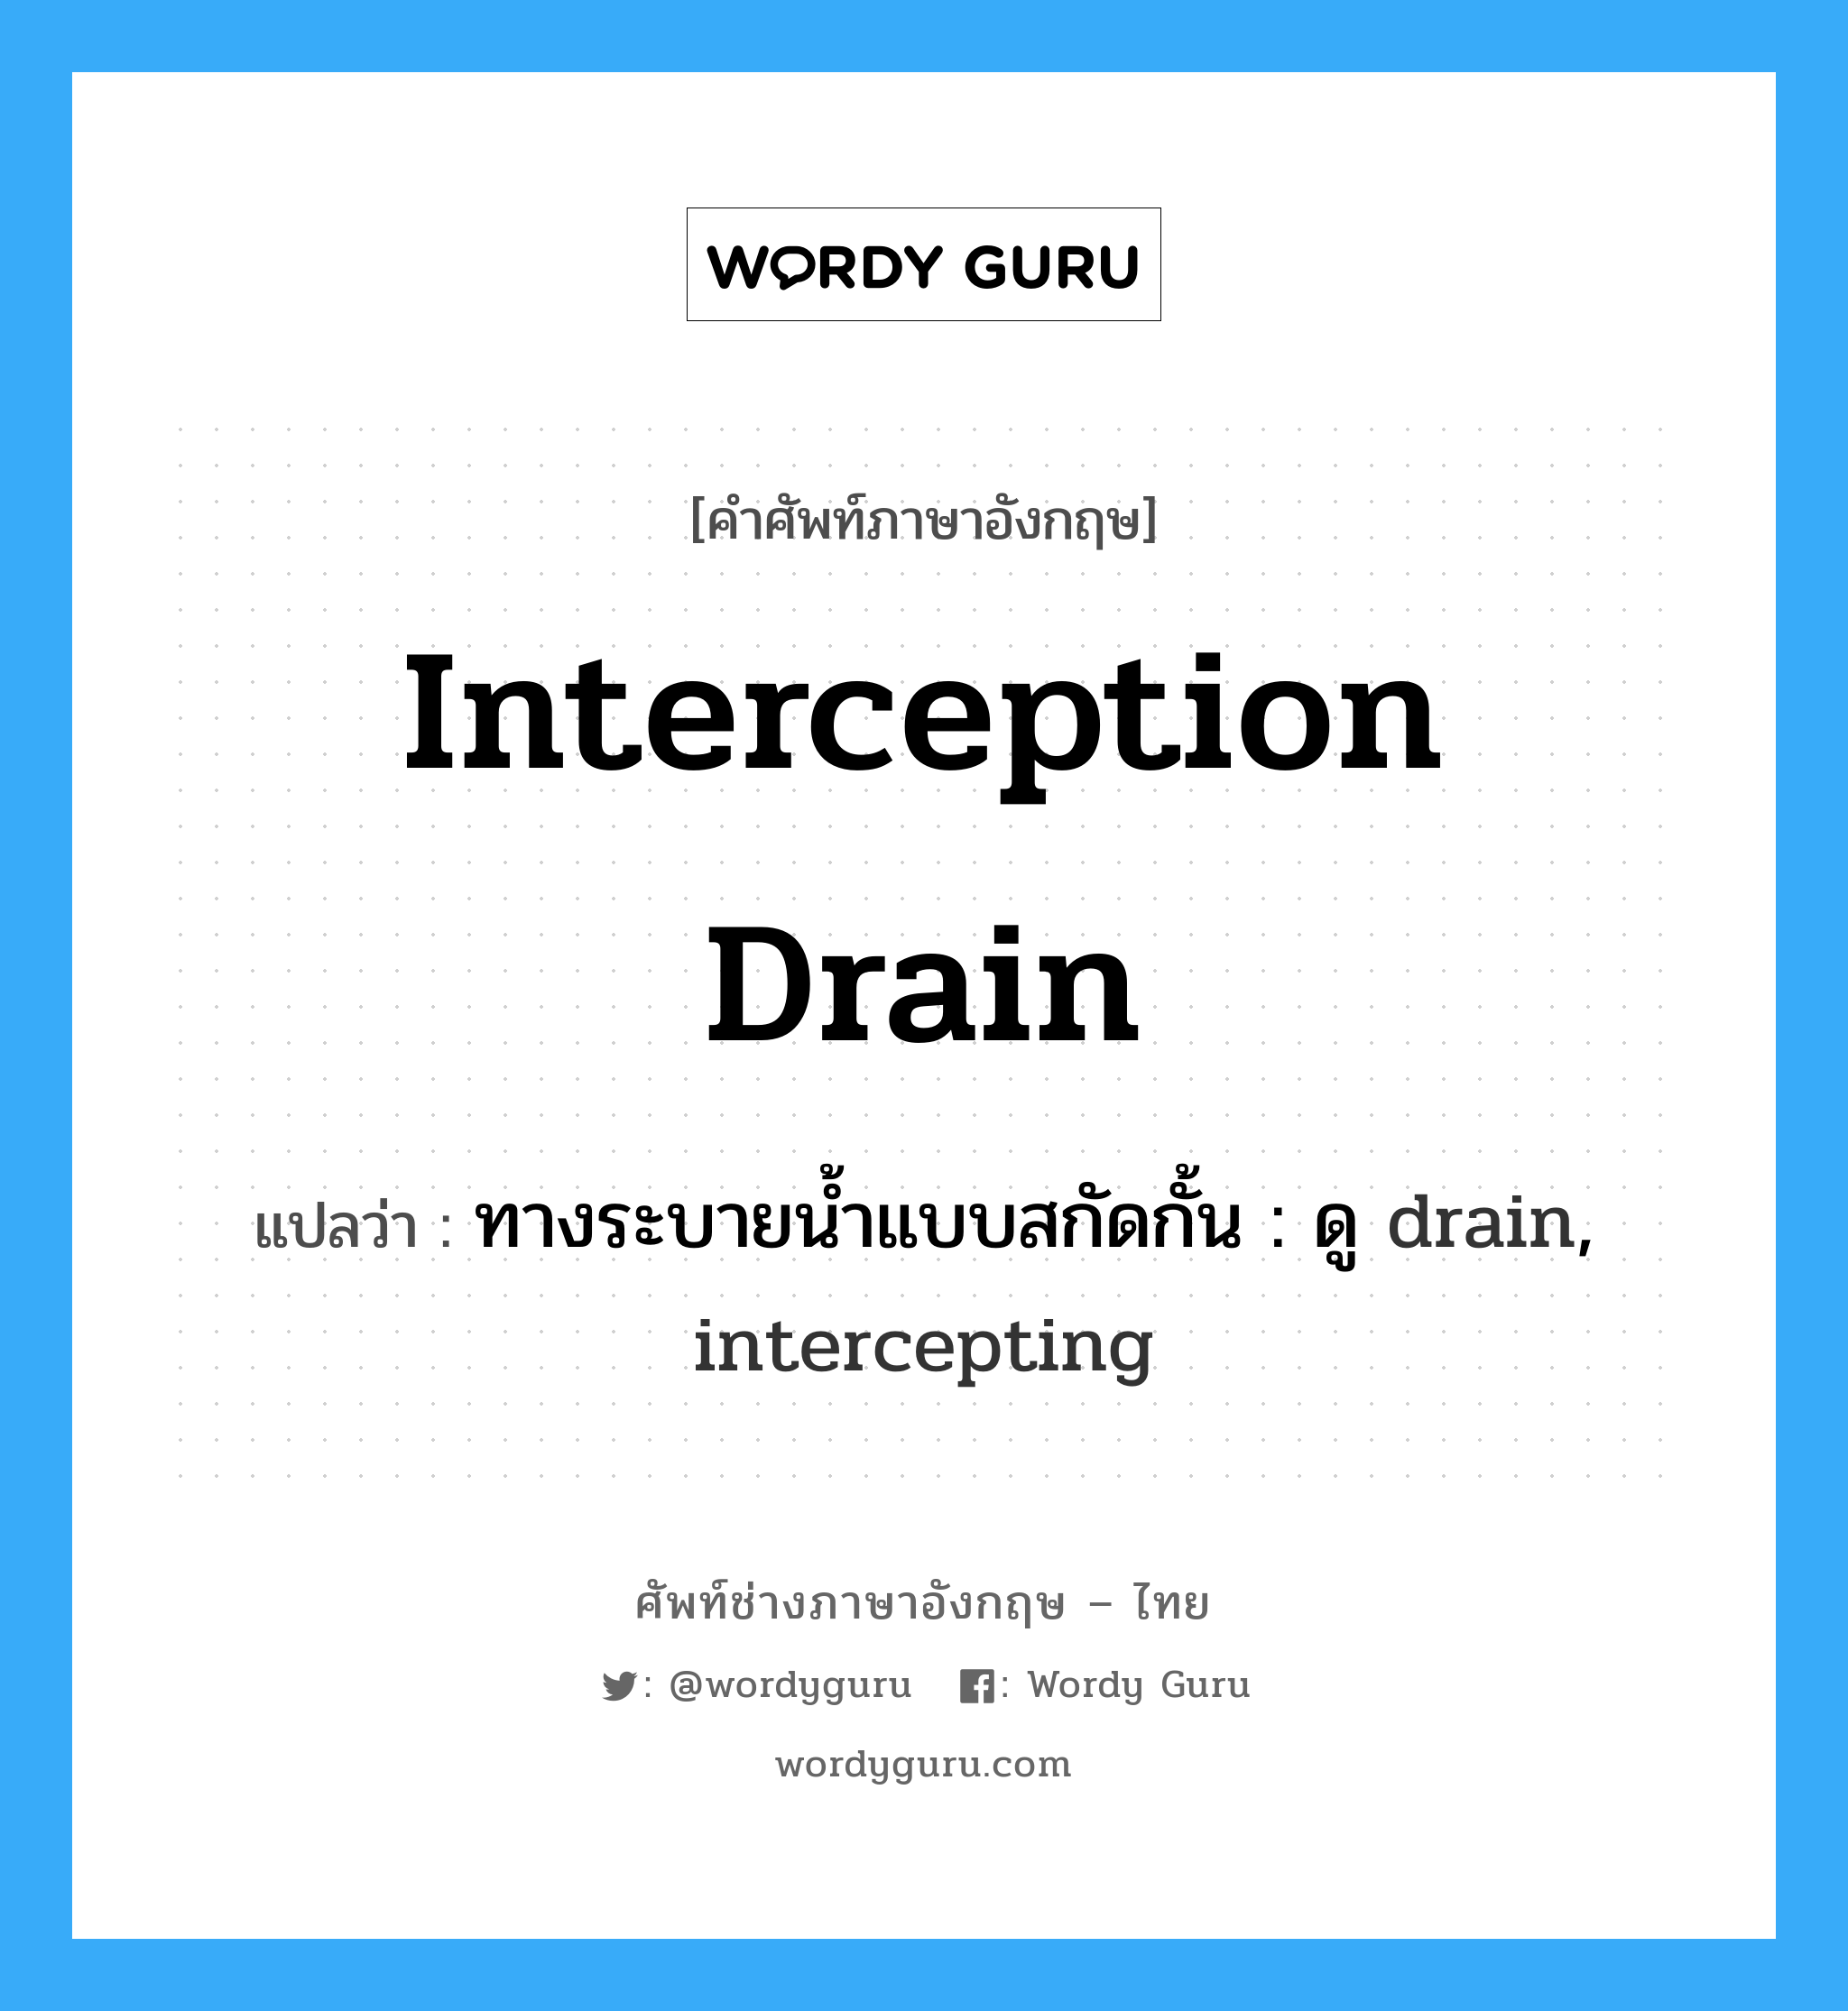 ทางระบายน้ำแบบสกัดกั้น : ดู drain, intercepting ภาษาอังกฤษ?, คำศัพท์ช่างภาษาอังกฤษ - ไทย ทางระบายน้ำแบบสกัดกั้น : ดู drain, intercepting คำศัพท์ภาษาอังกฤษ ทางระบายน้ำแบบสกัดกั้น : ดู drain, intercepting แปลว่า interception drain